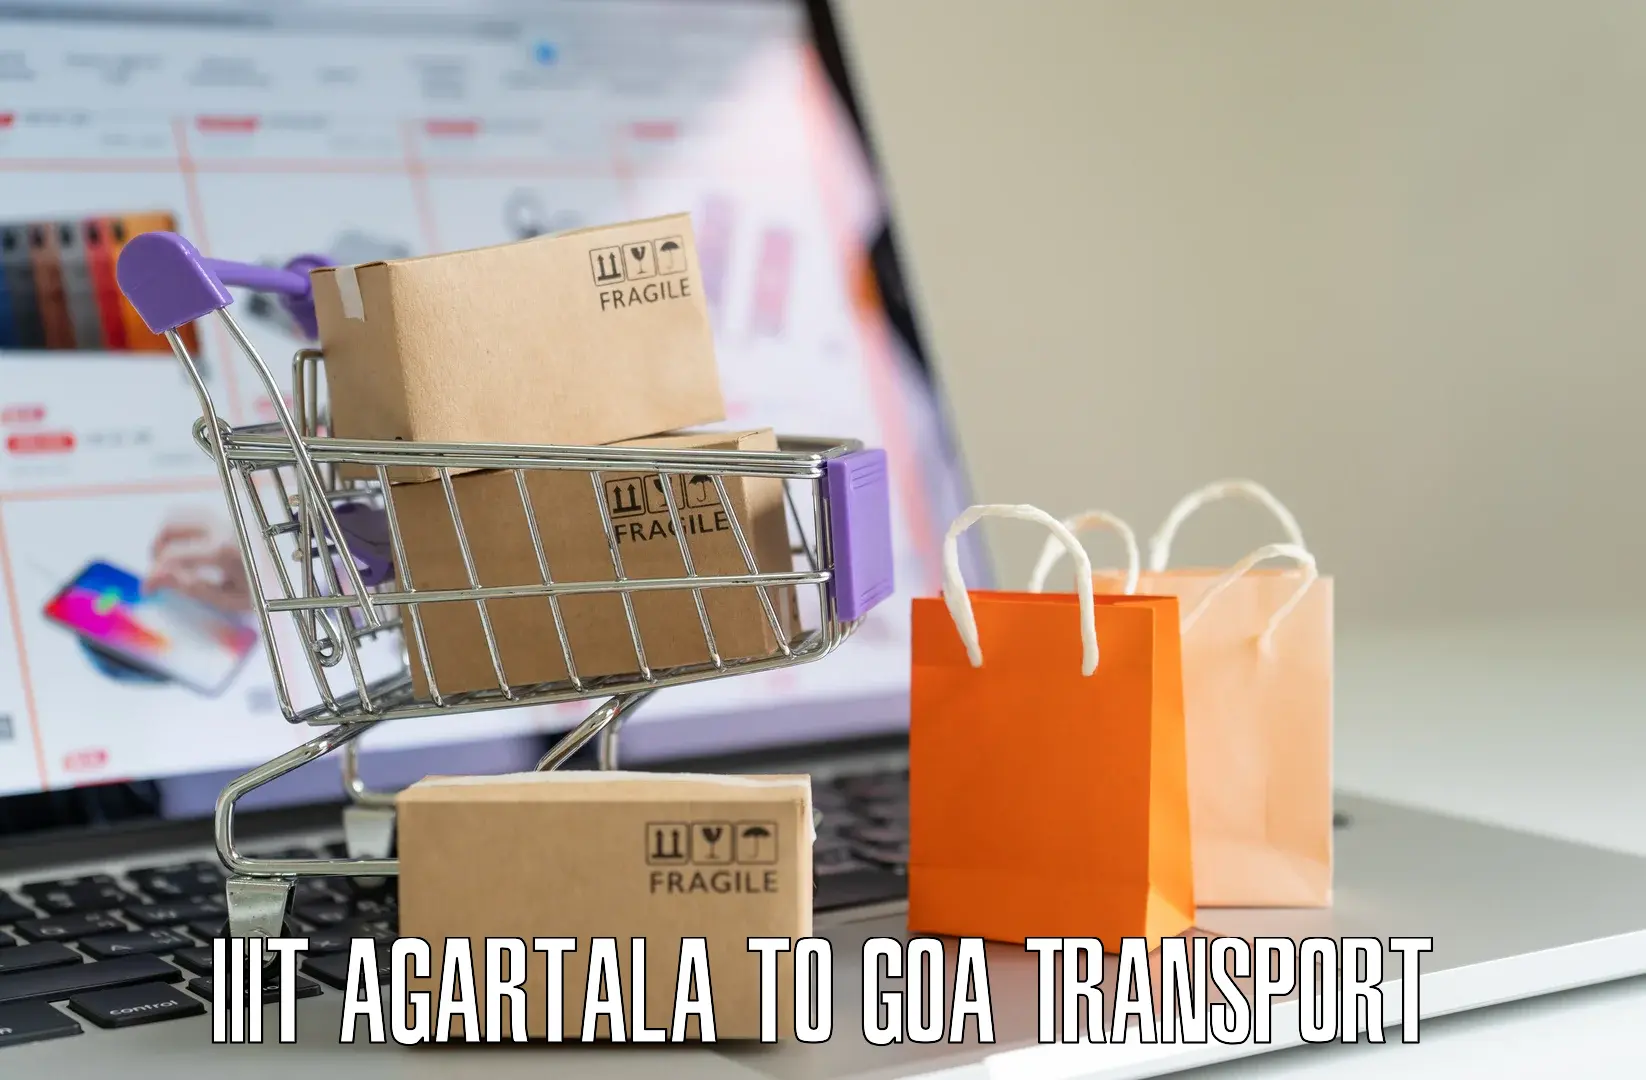 Intercity goods transport IIIT Agartala to Margao